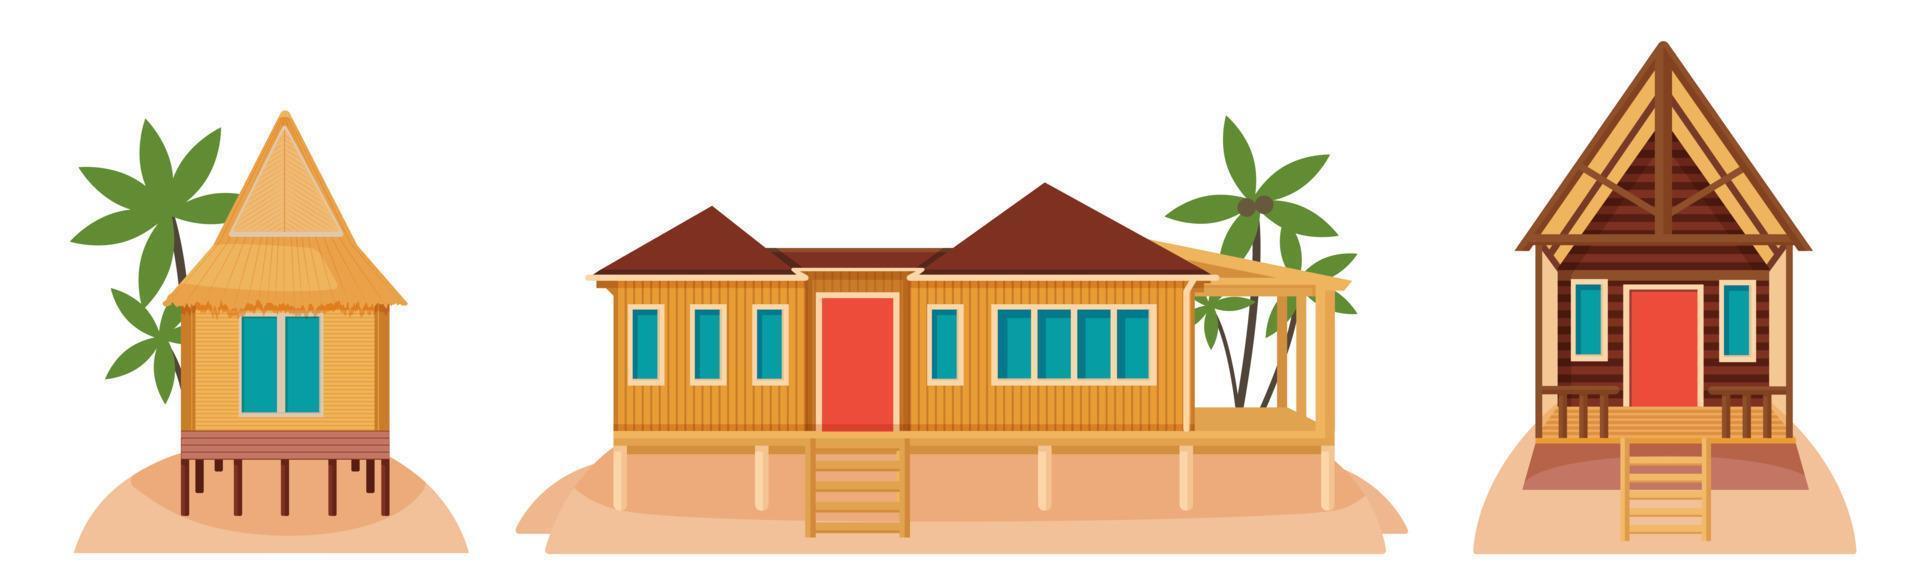 casas de bungalows en islas tropicales. ilustración de arquitectura exótica vector